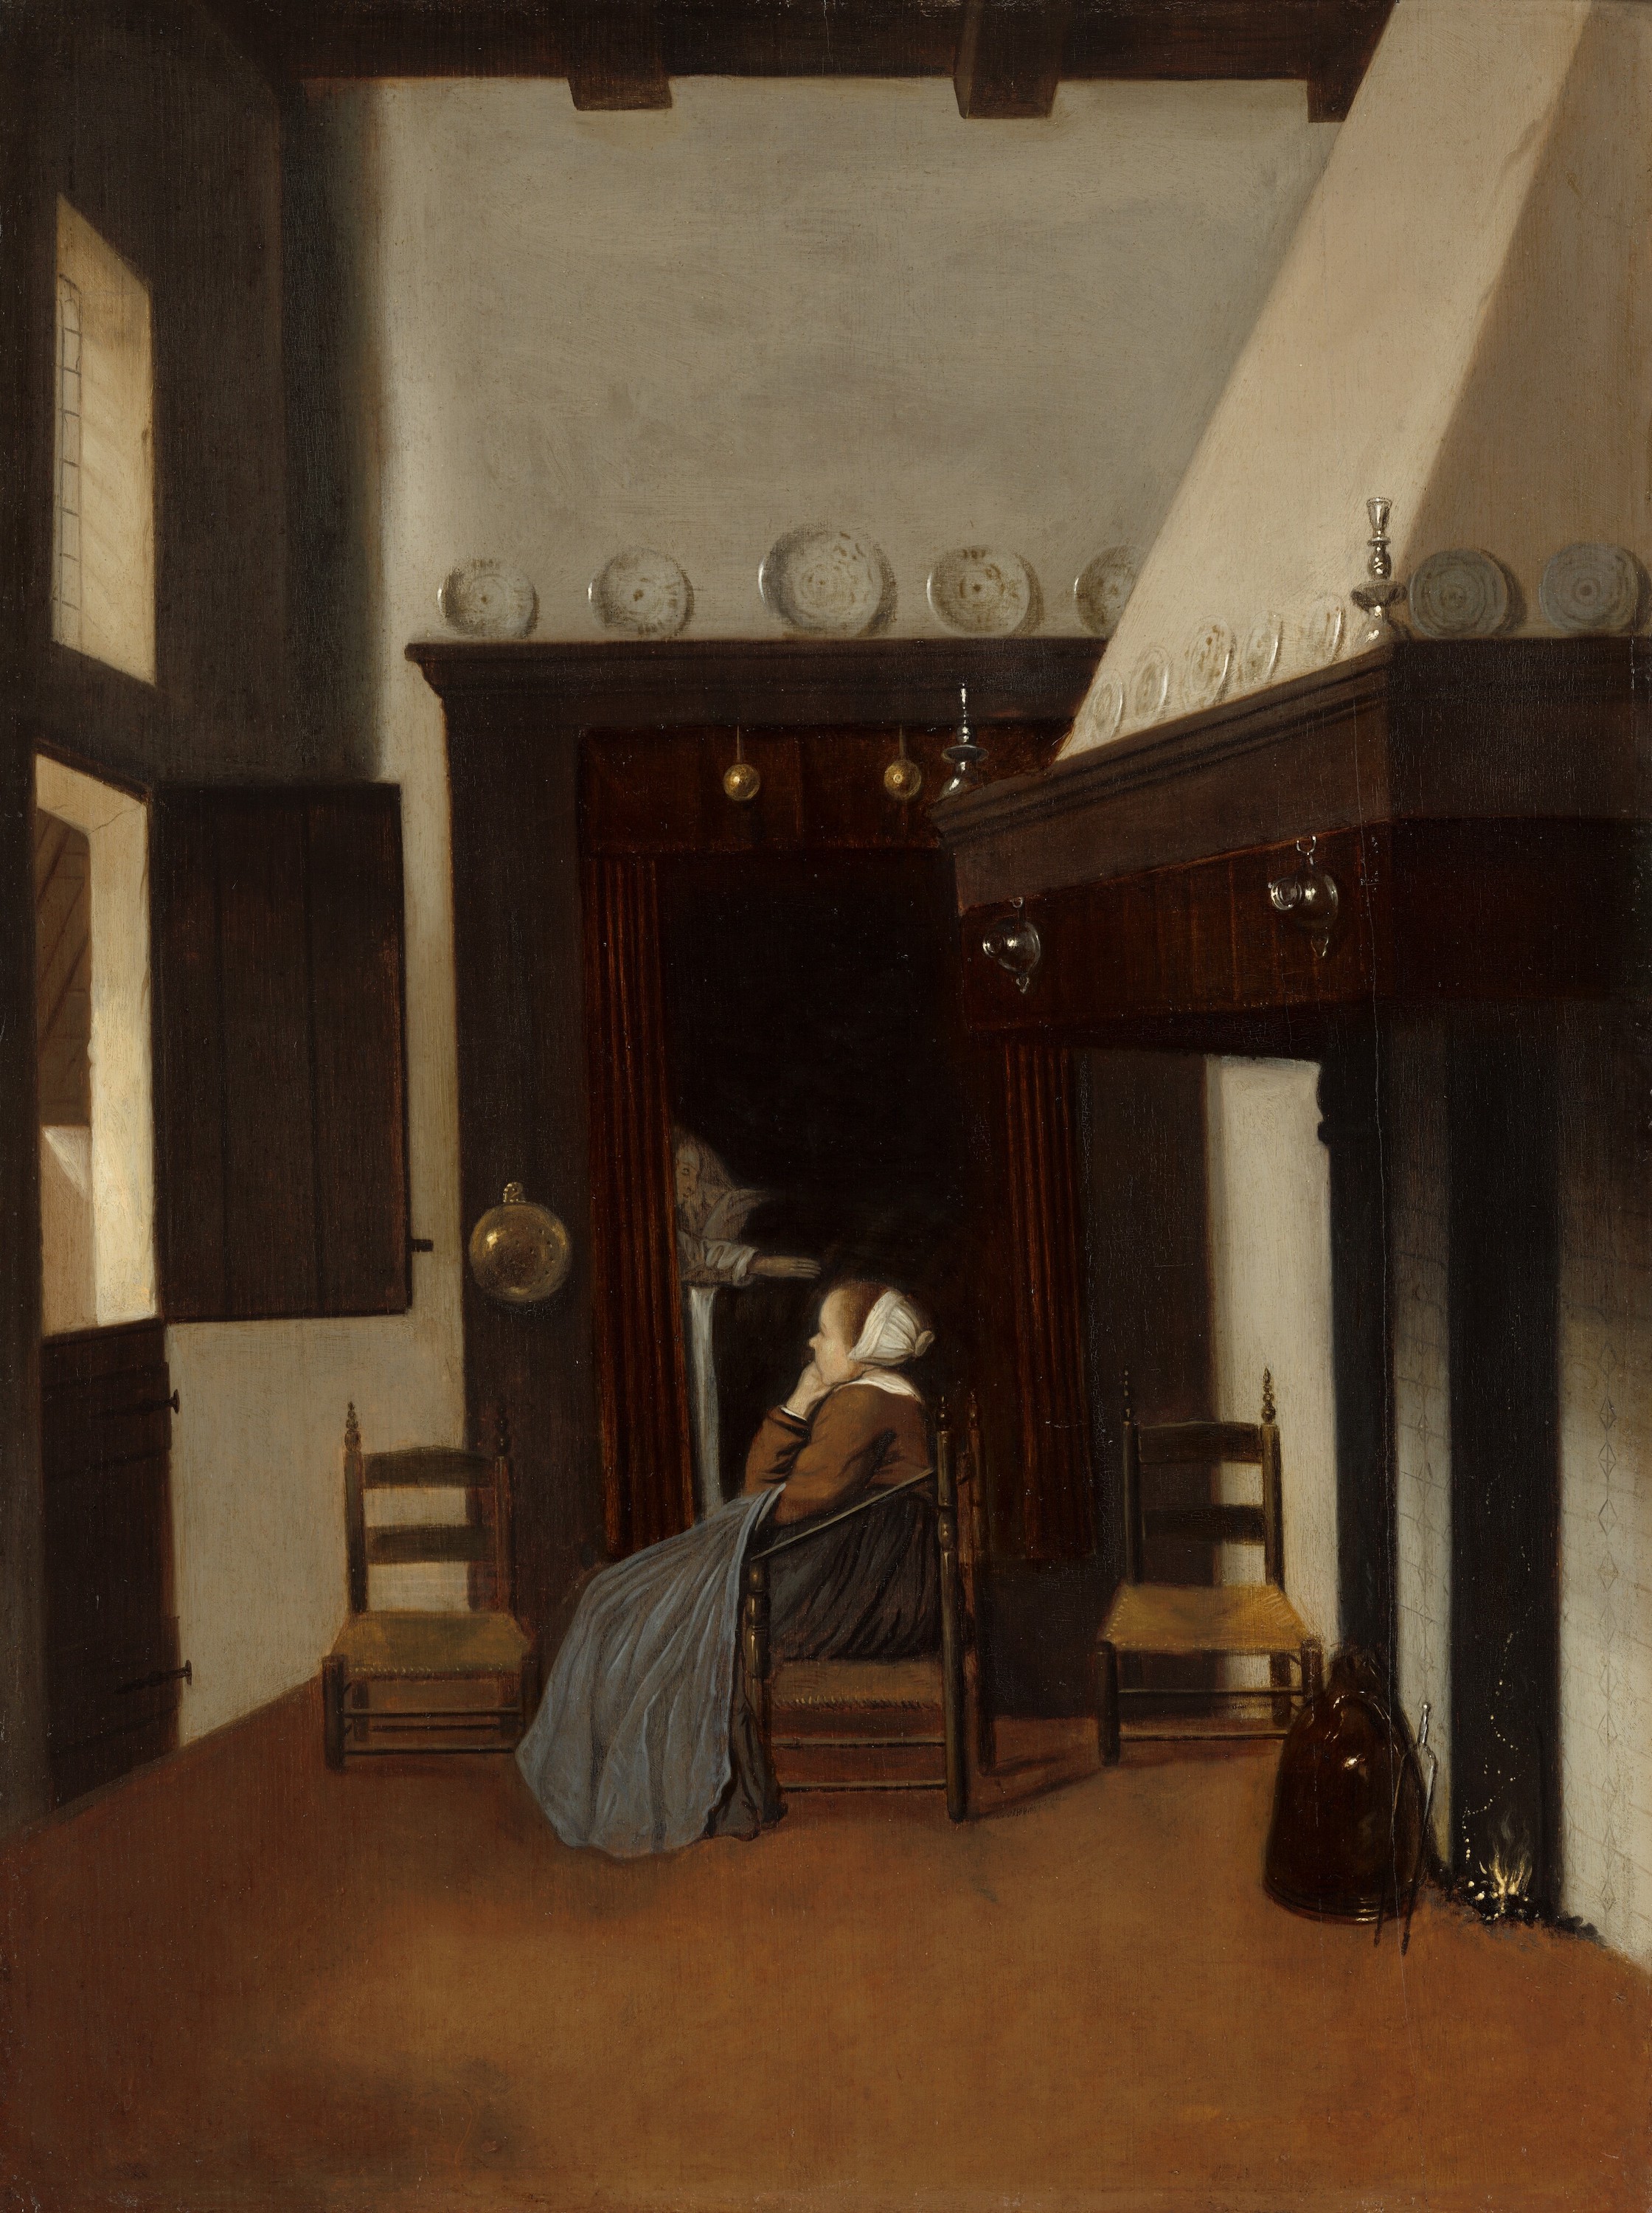 内景中的年轻女人 by 雅各布斯 弗雷尔 - c. 1660 - 55.7 × 41.3 cm 